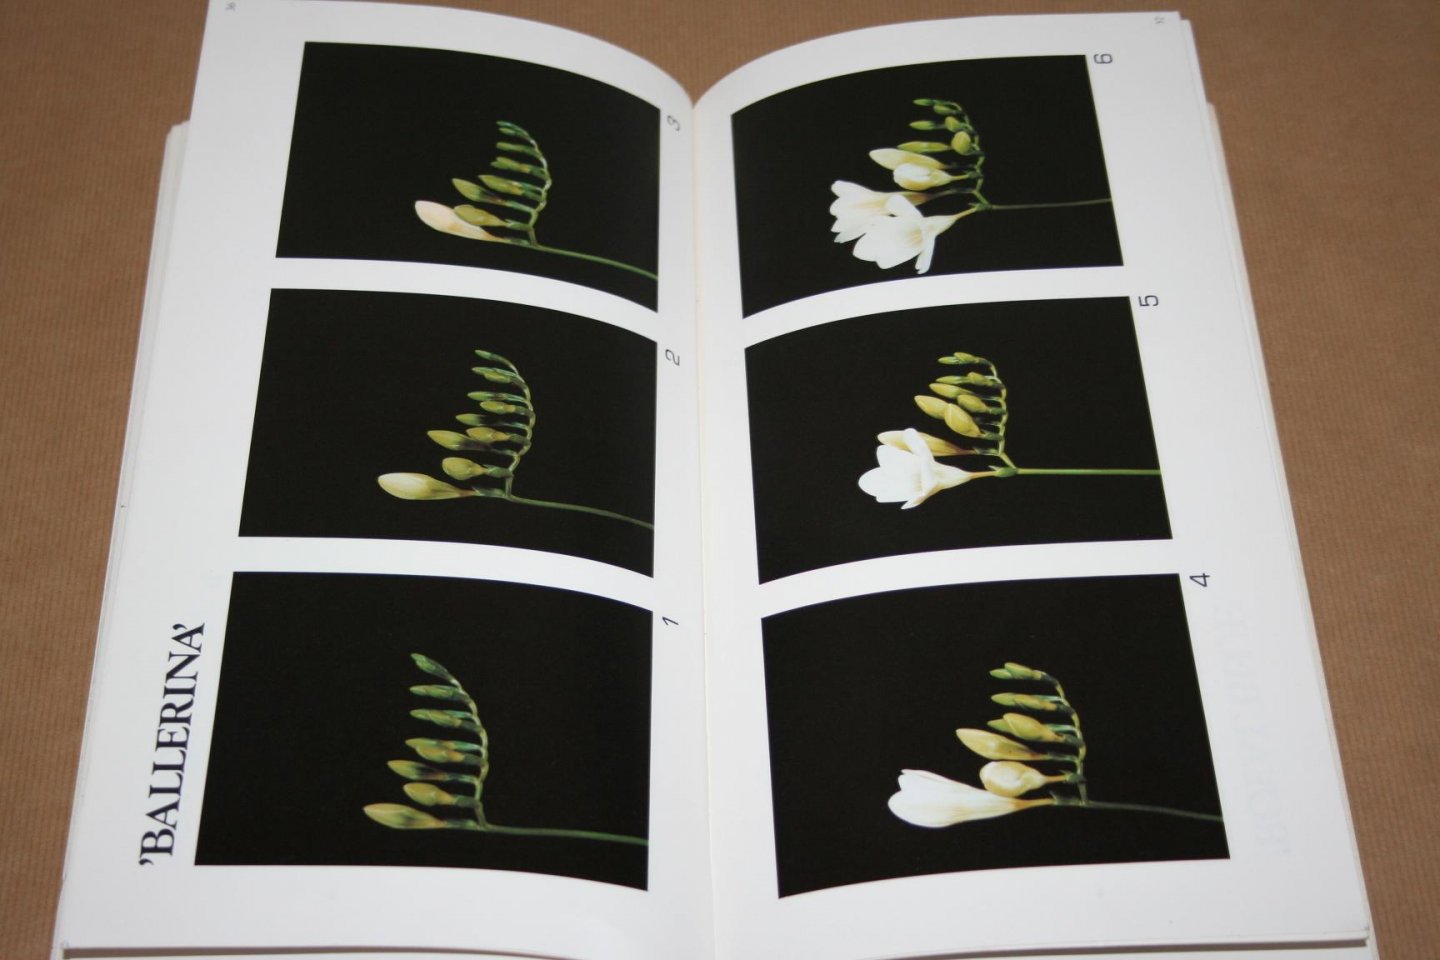  - Catalogus  Holland Flower   (Rozen, tulpen enz.)